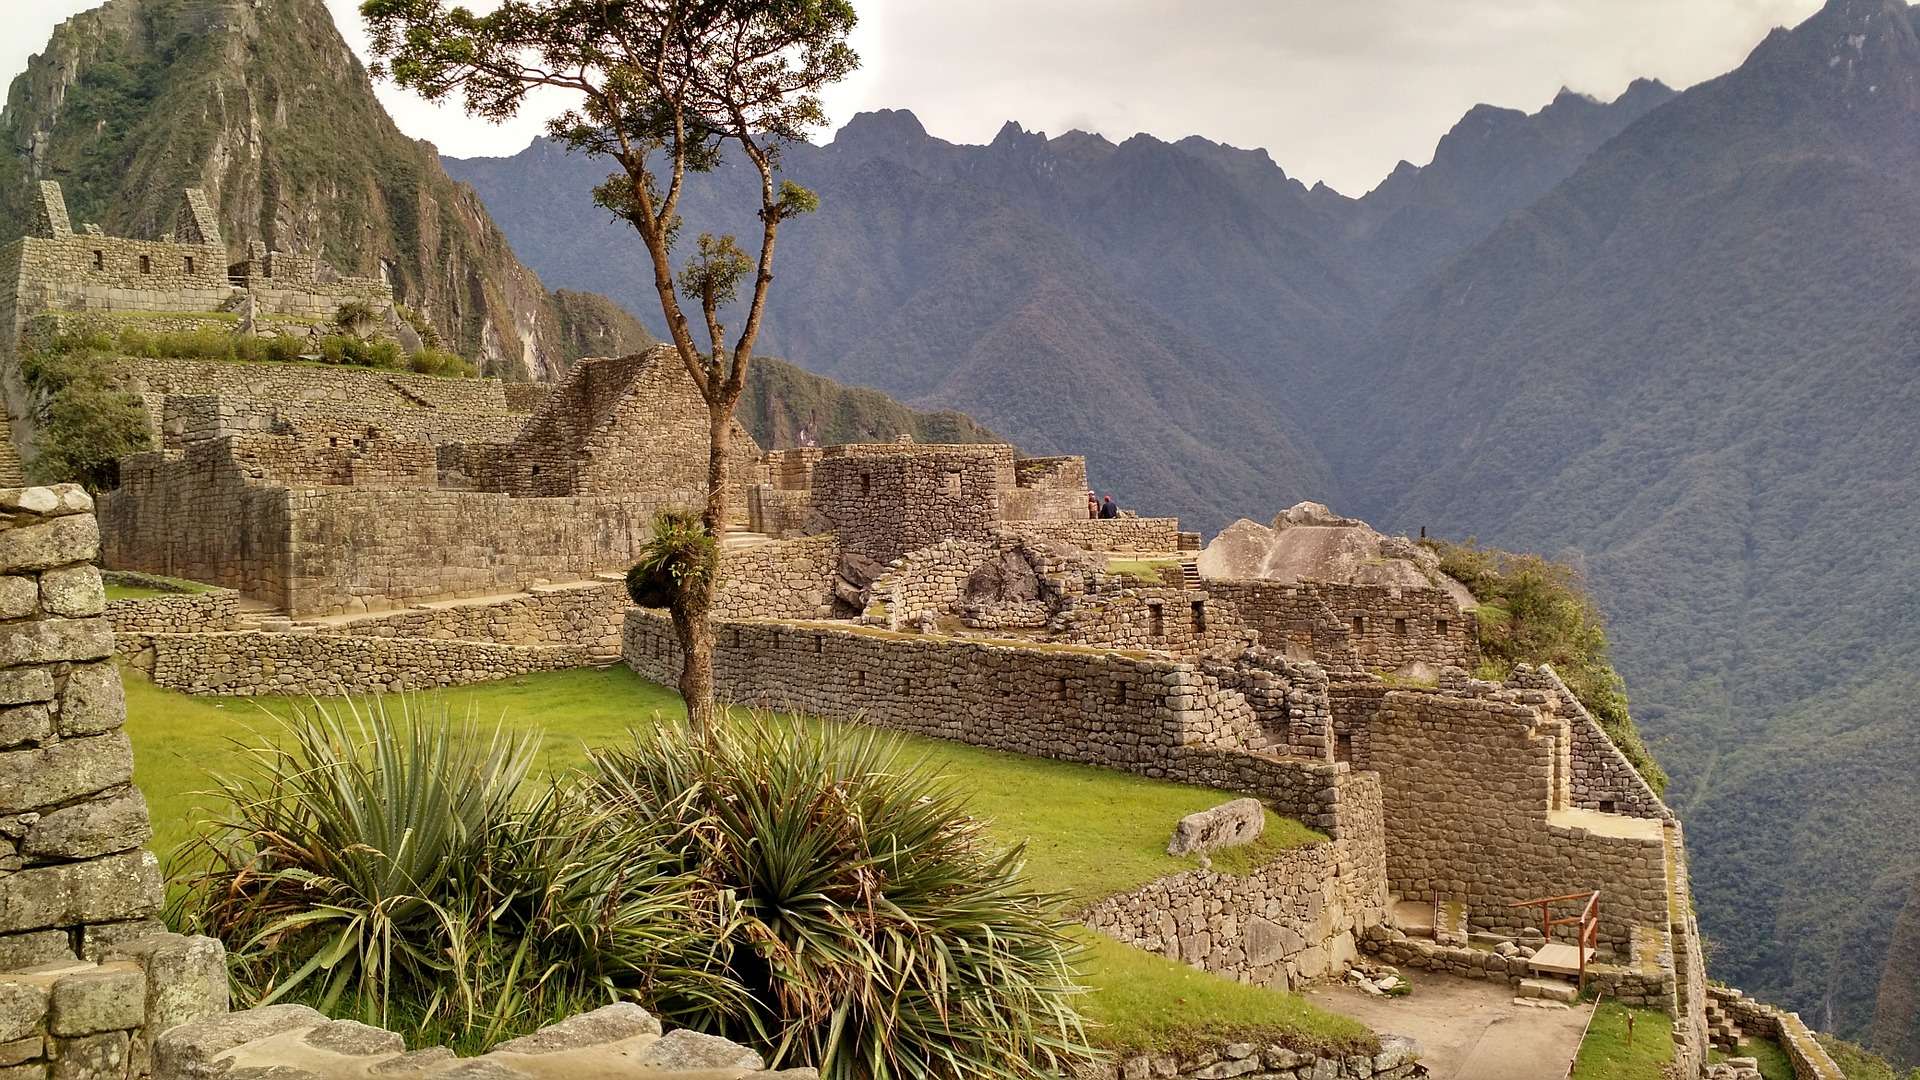 Excursión a Machu Picchu (Turista Nacional)